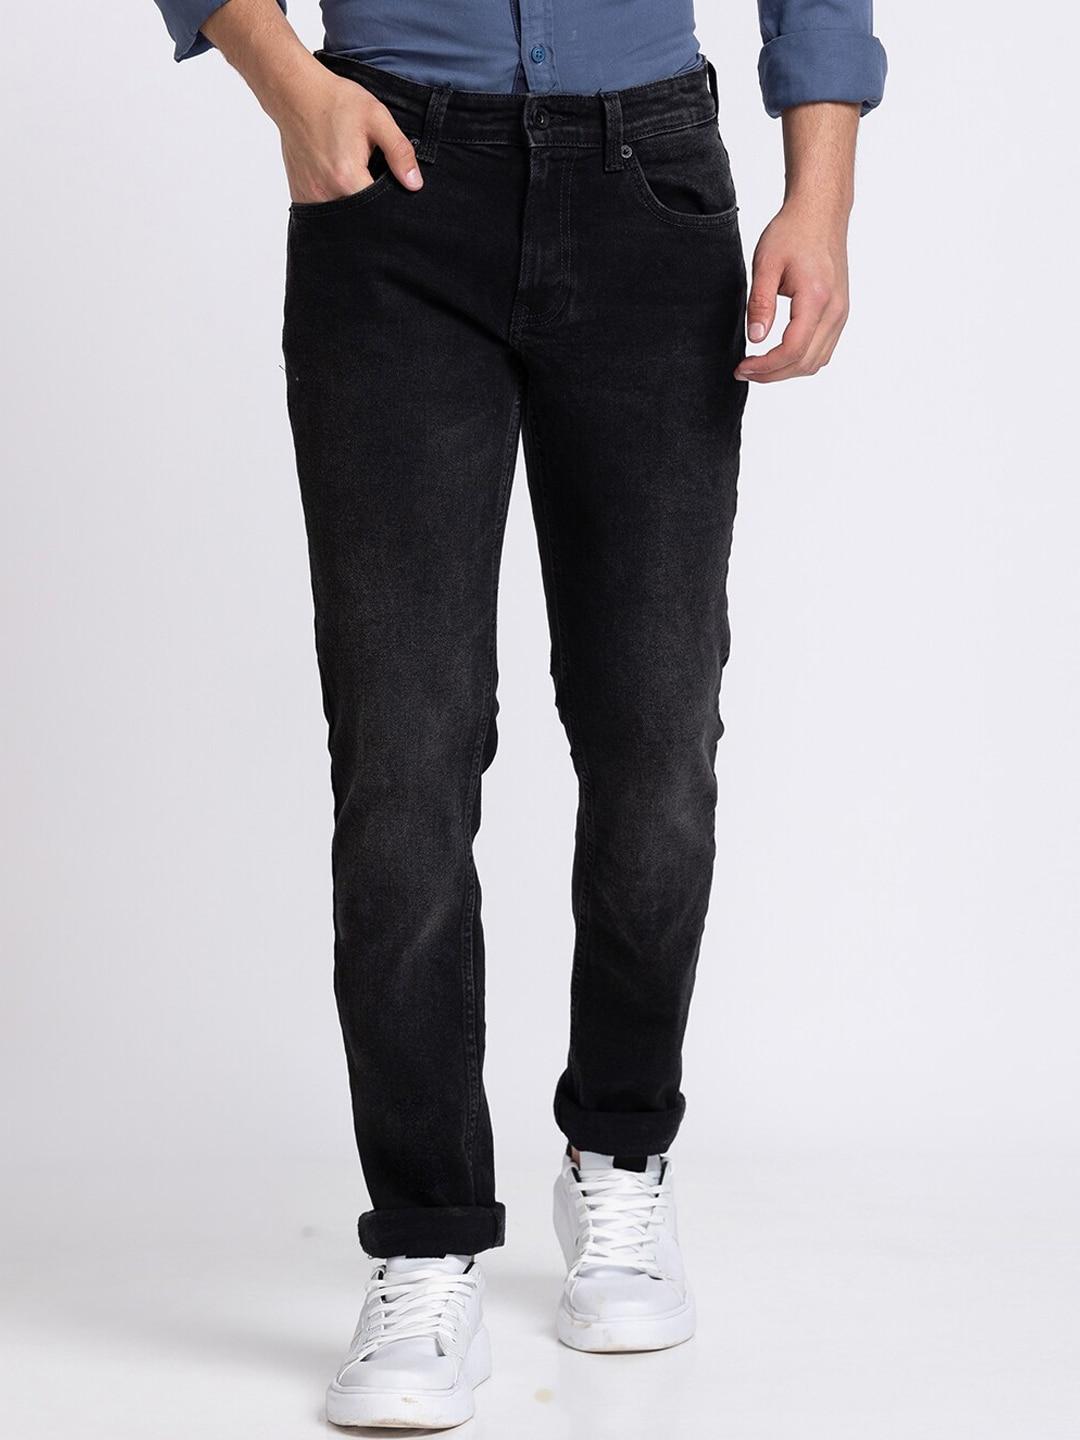 spykar-men-black-light-fade-jeans